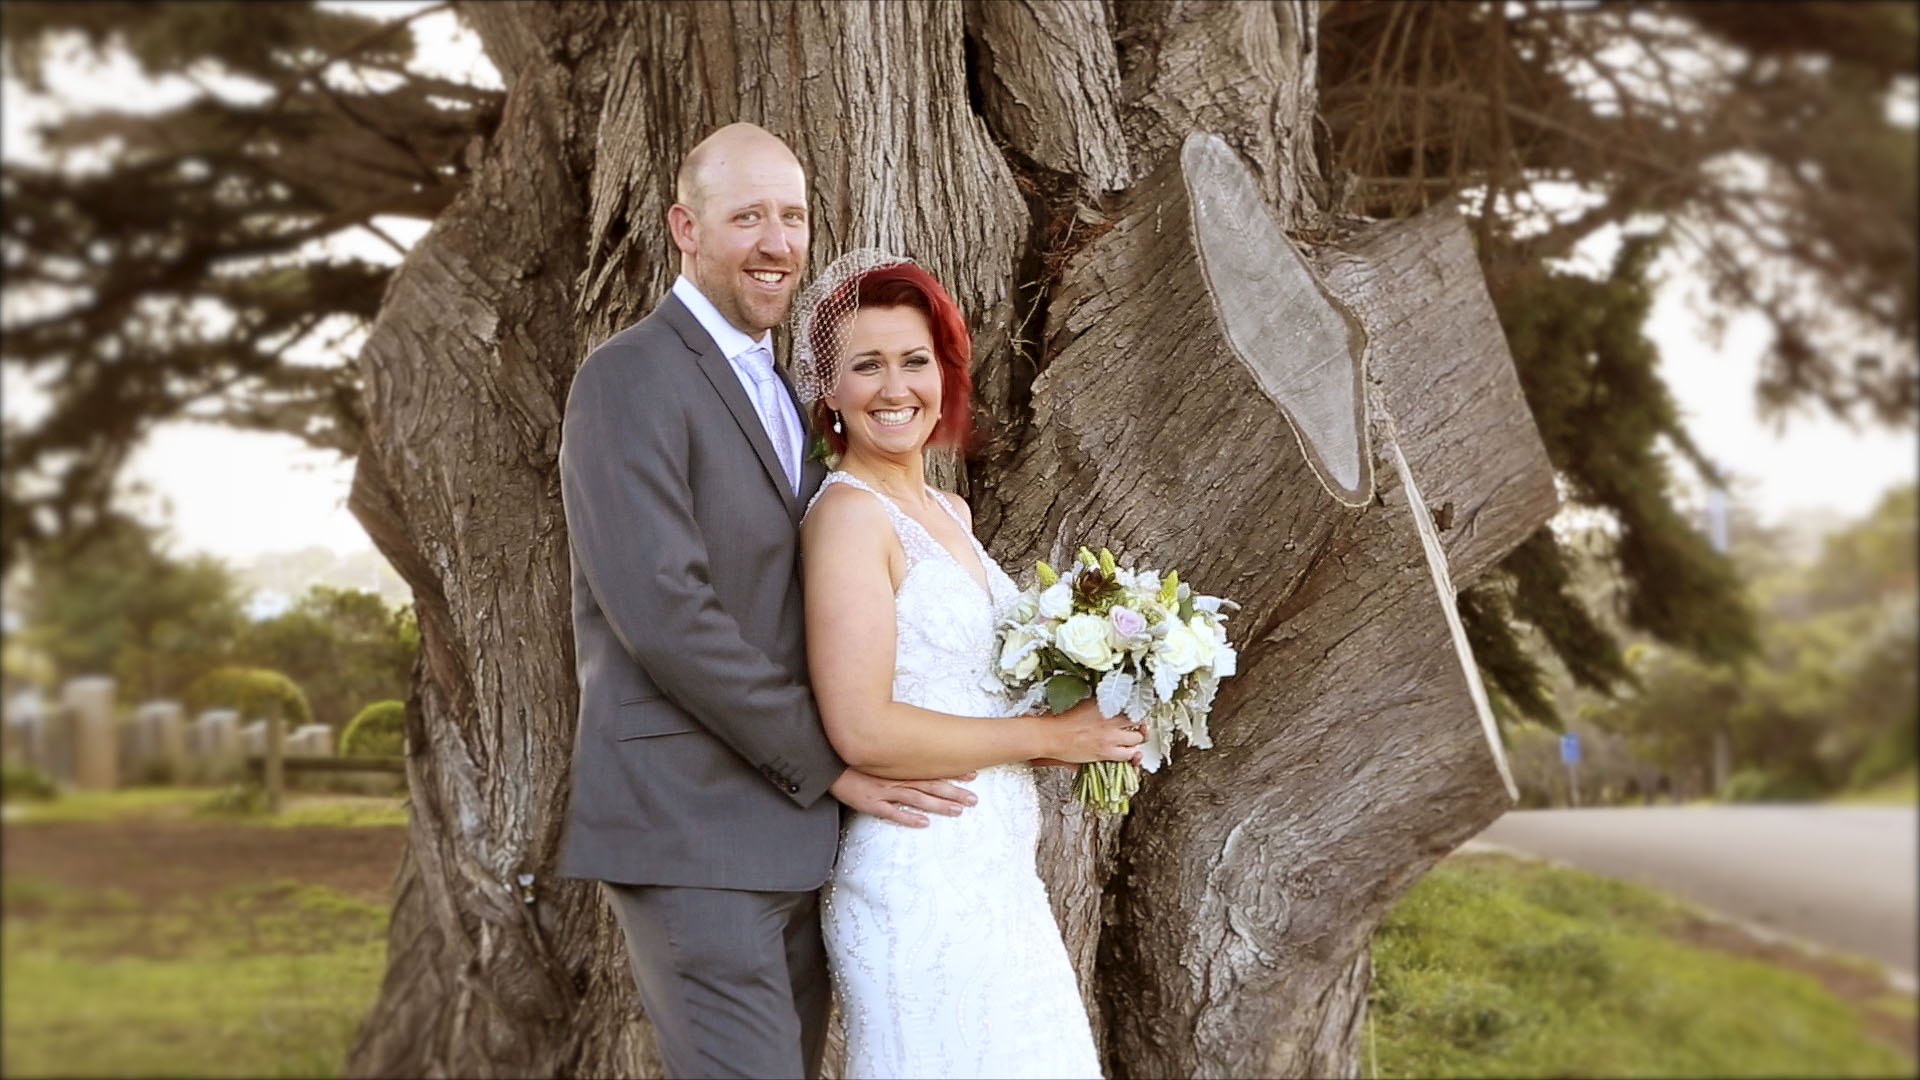 Michelle & Rhys – a wedding video